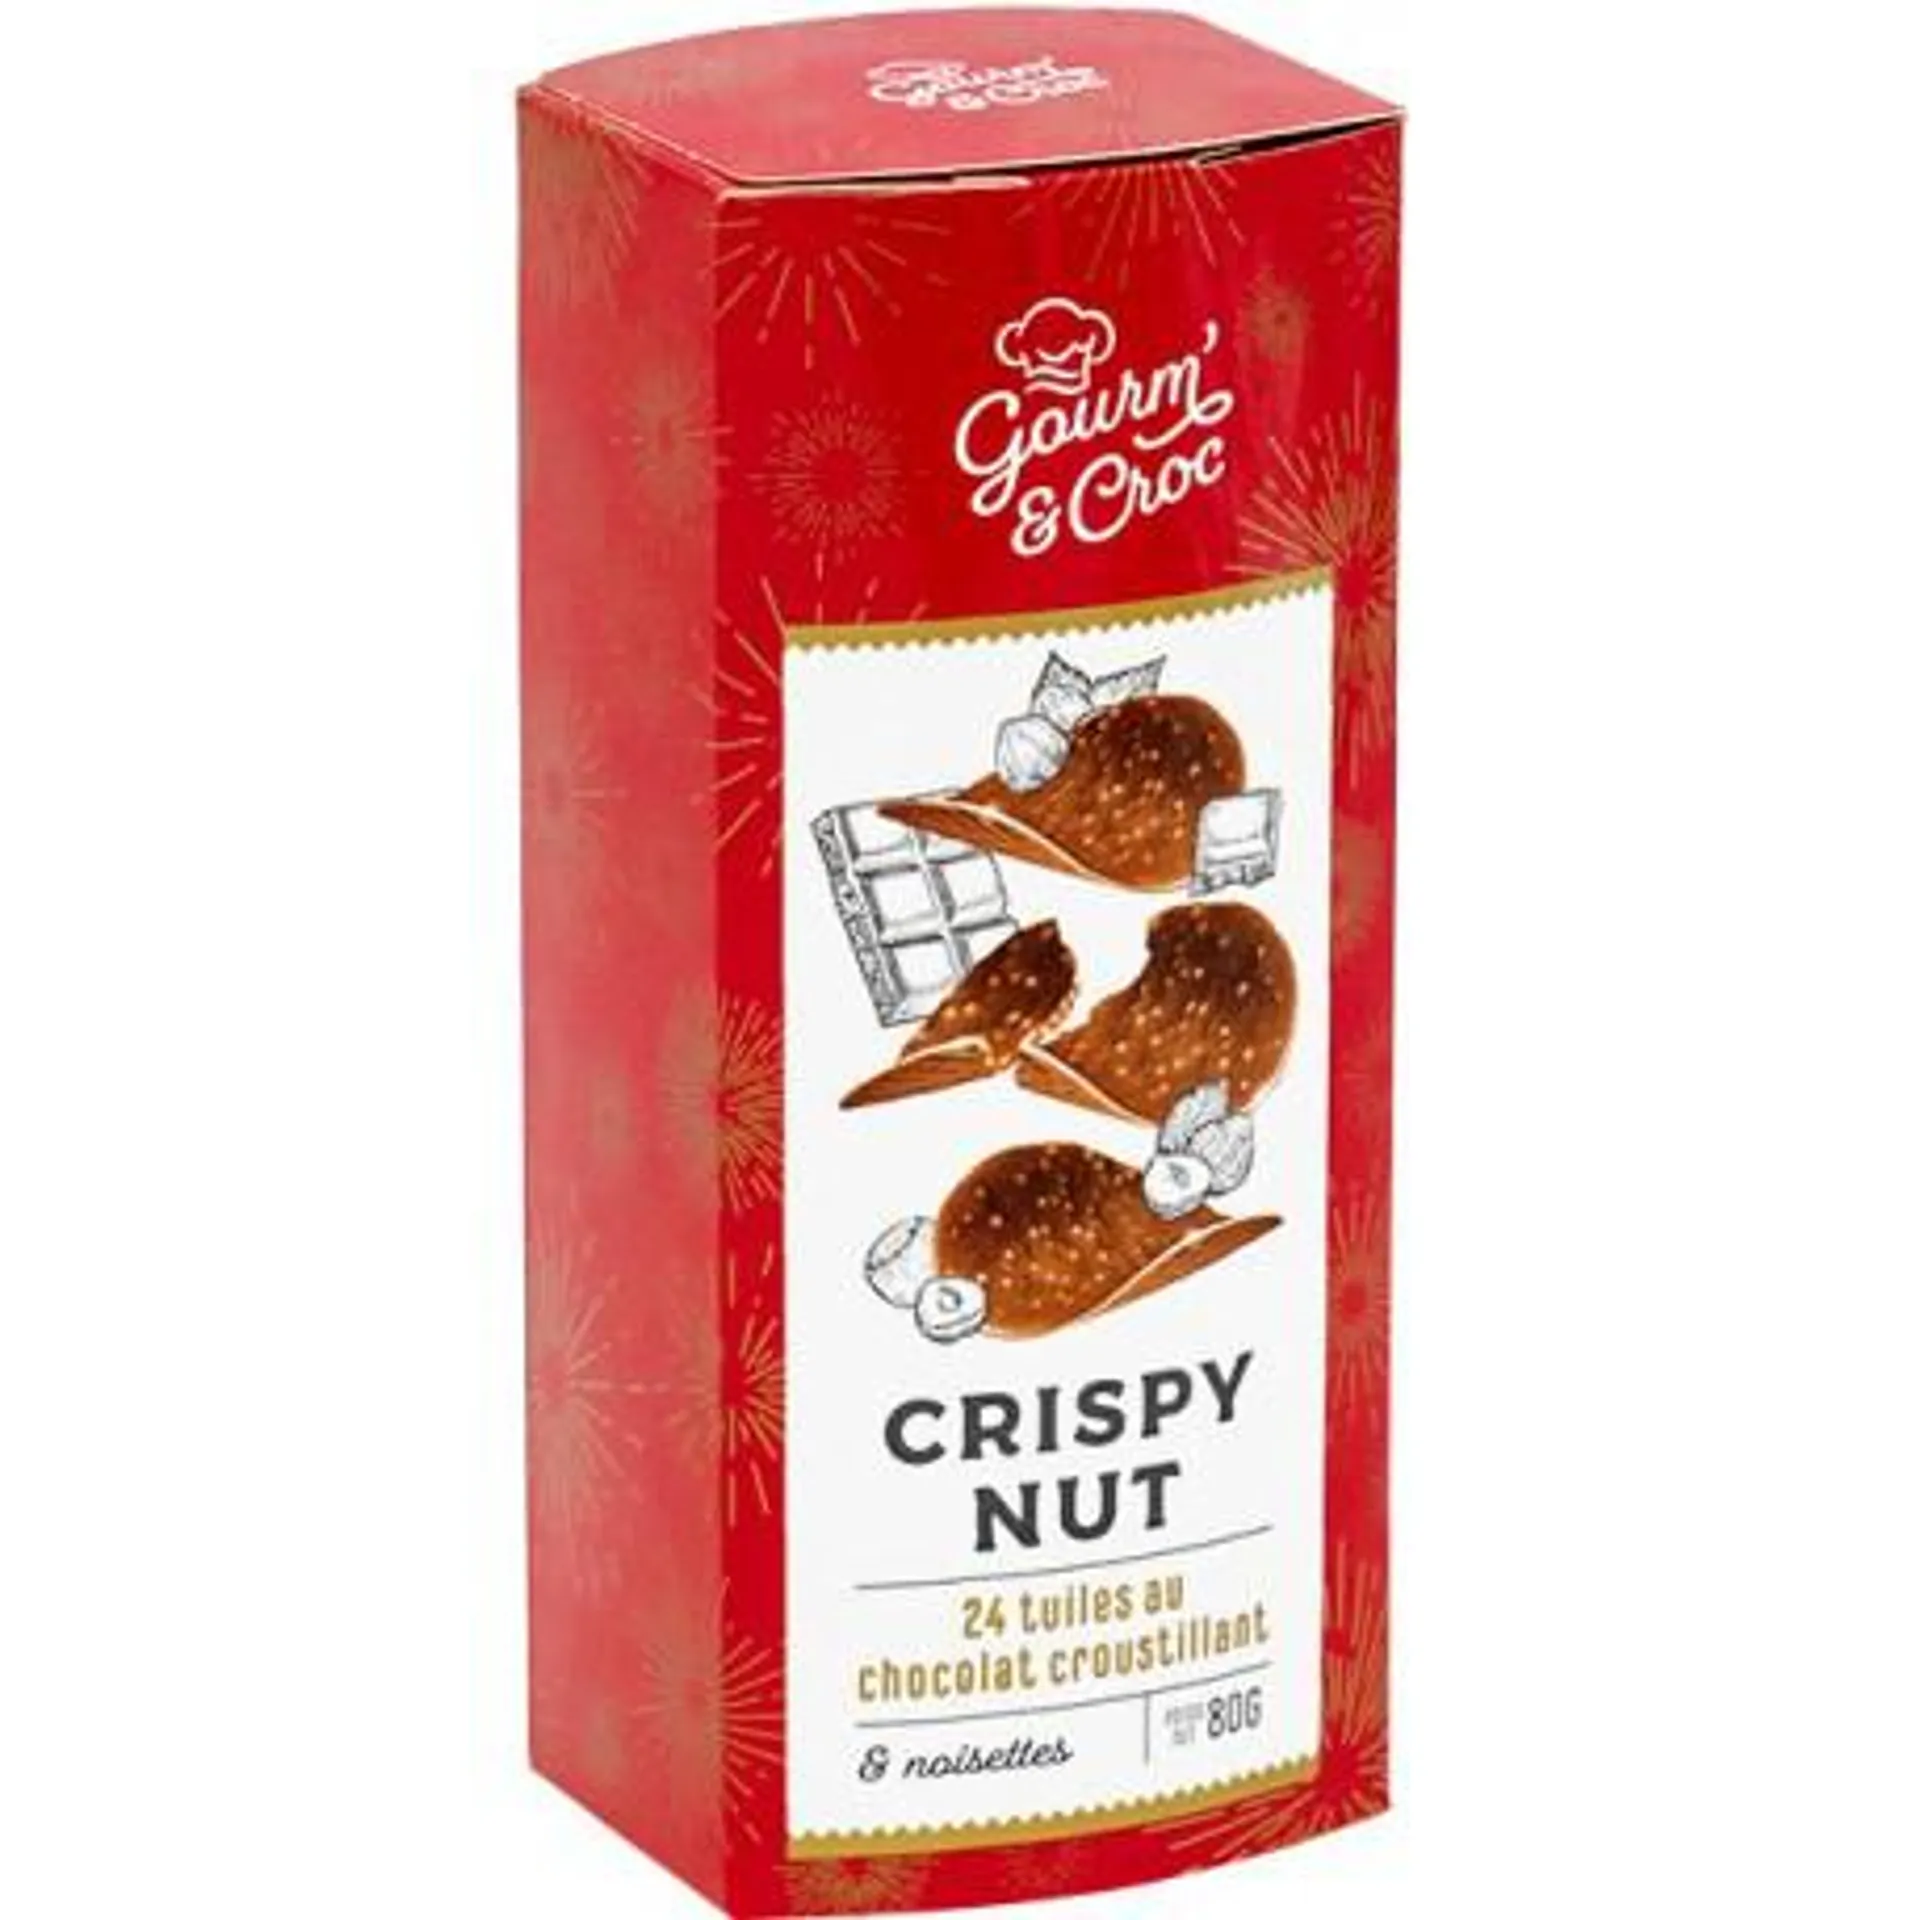 "Crispy Nut" Tuiles de chocolat croustillant et noisettes